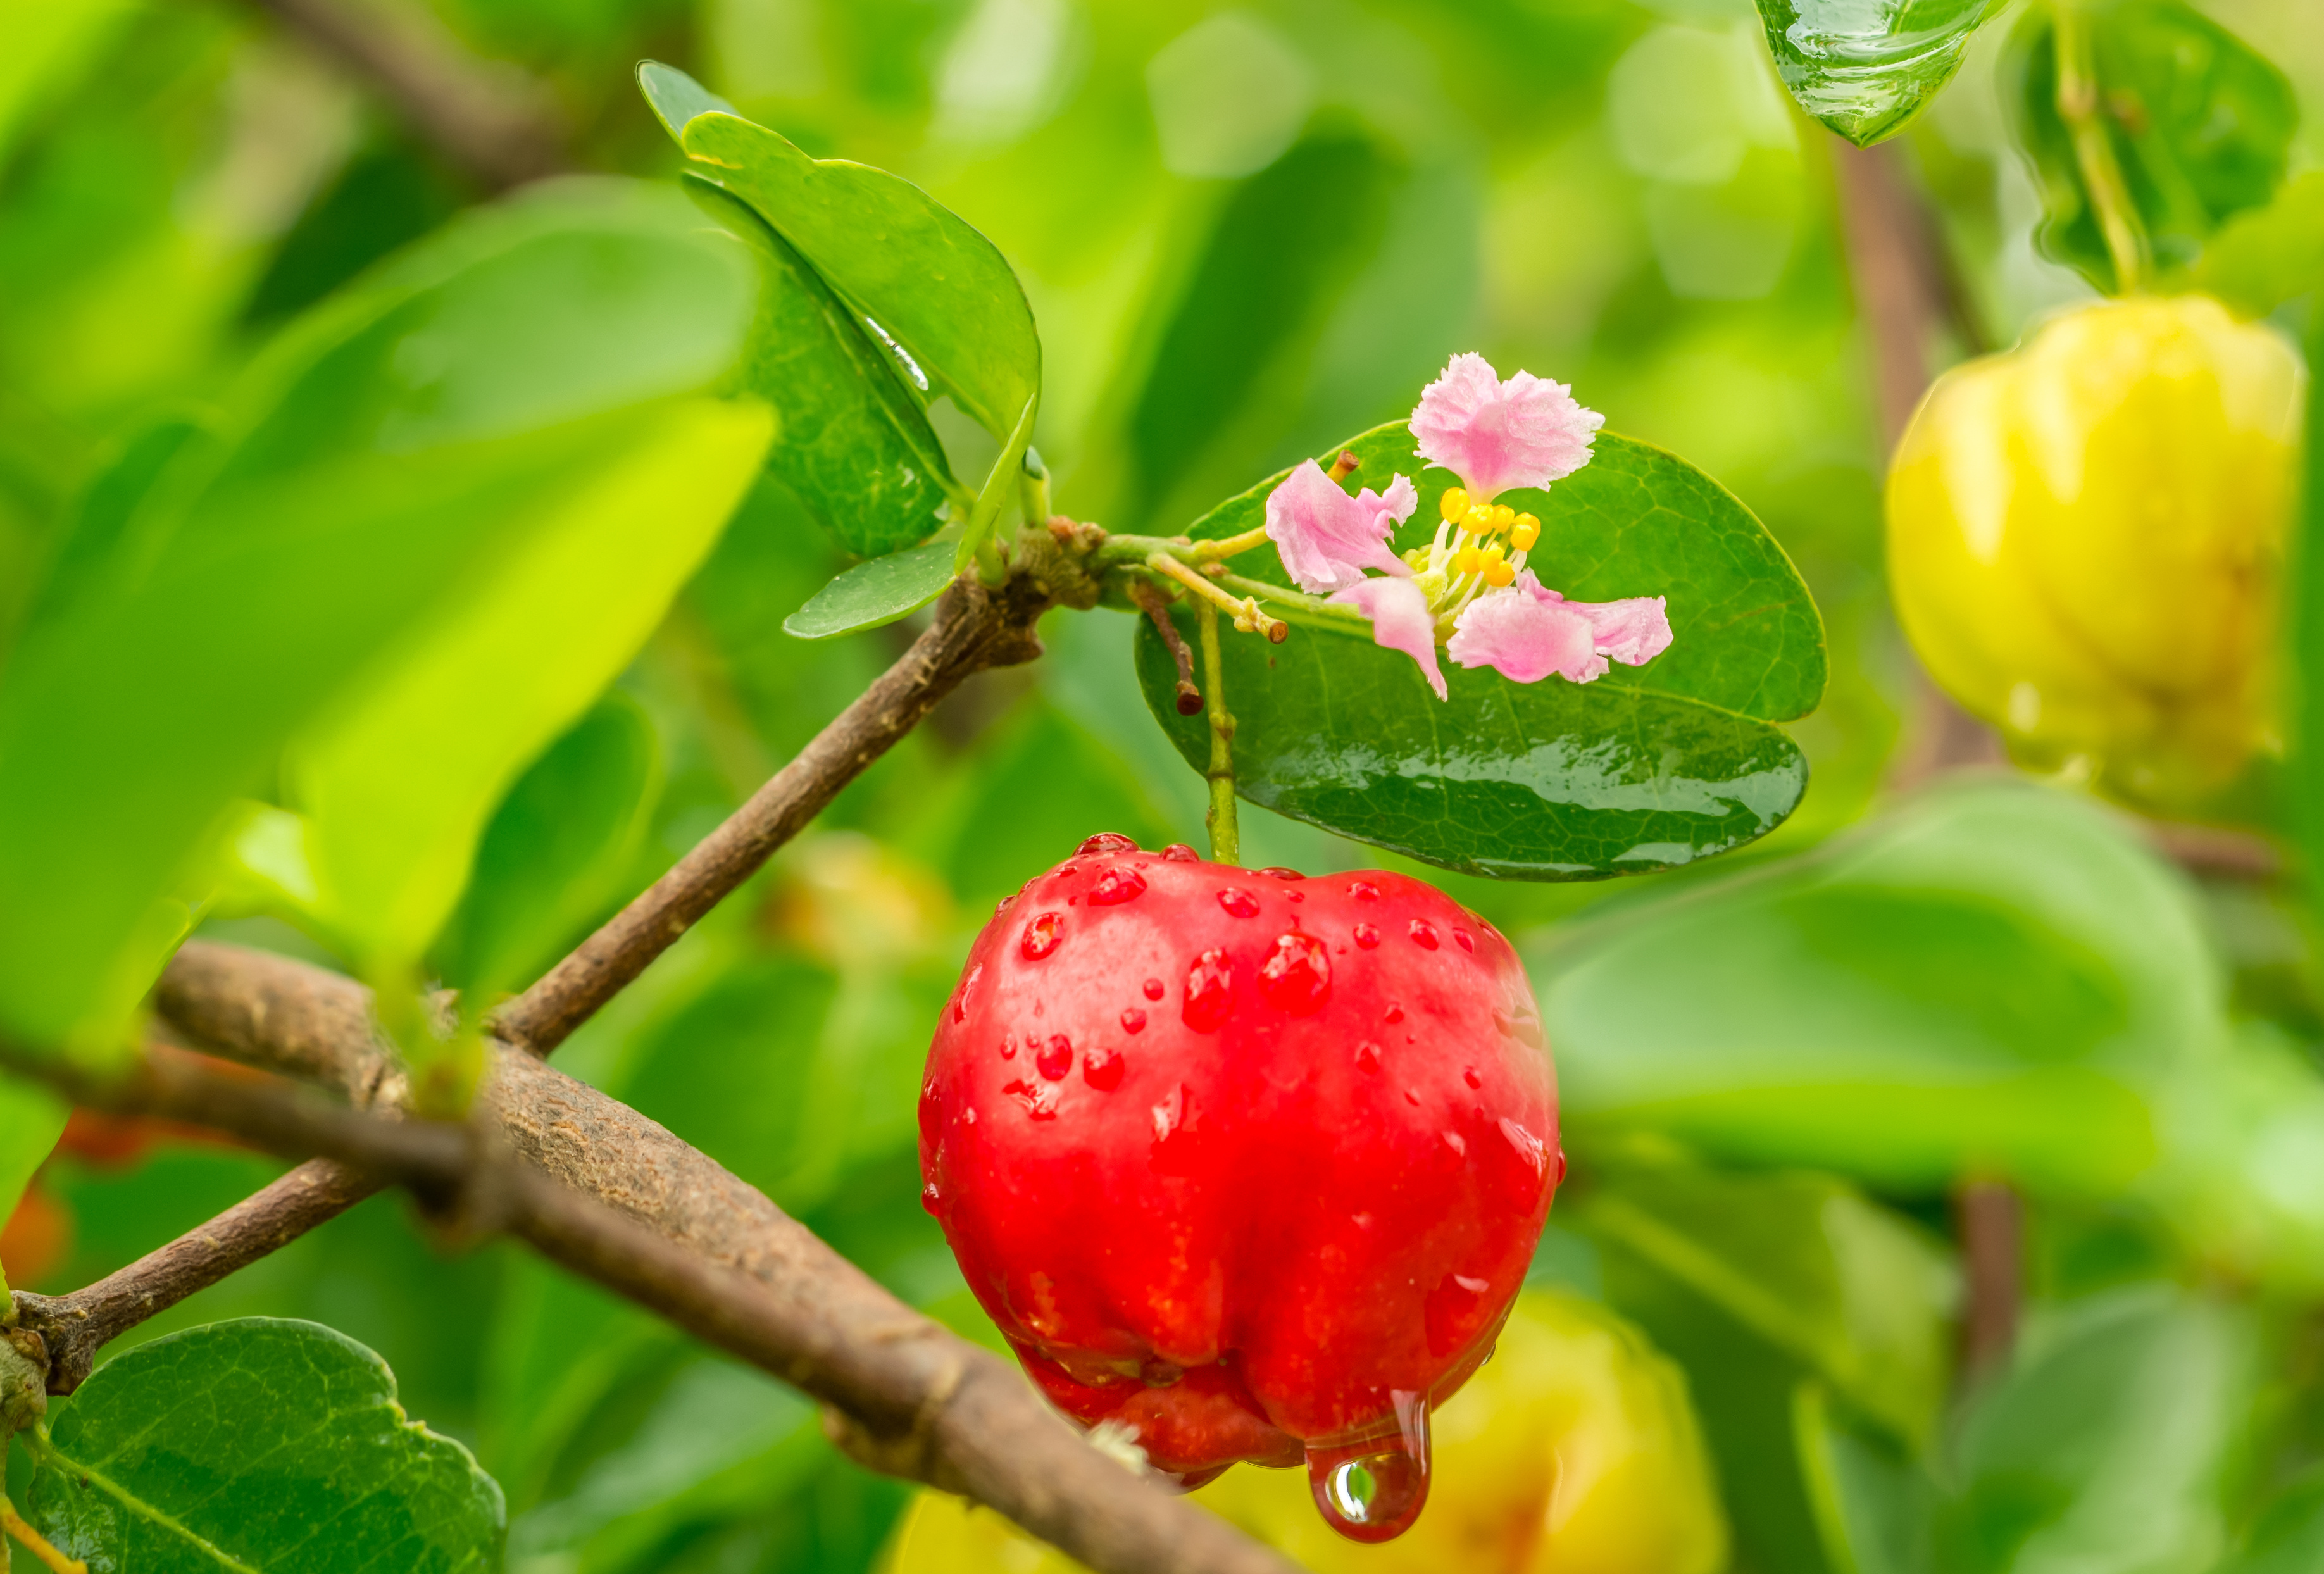 ACEROLA: the Barbados Cherry